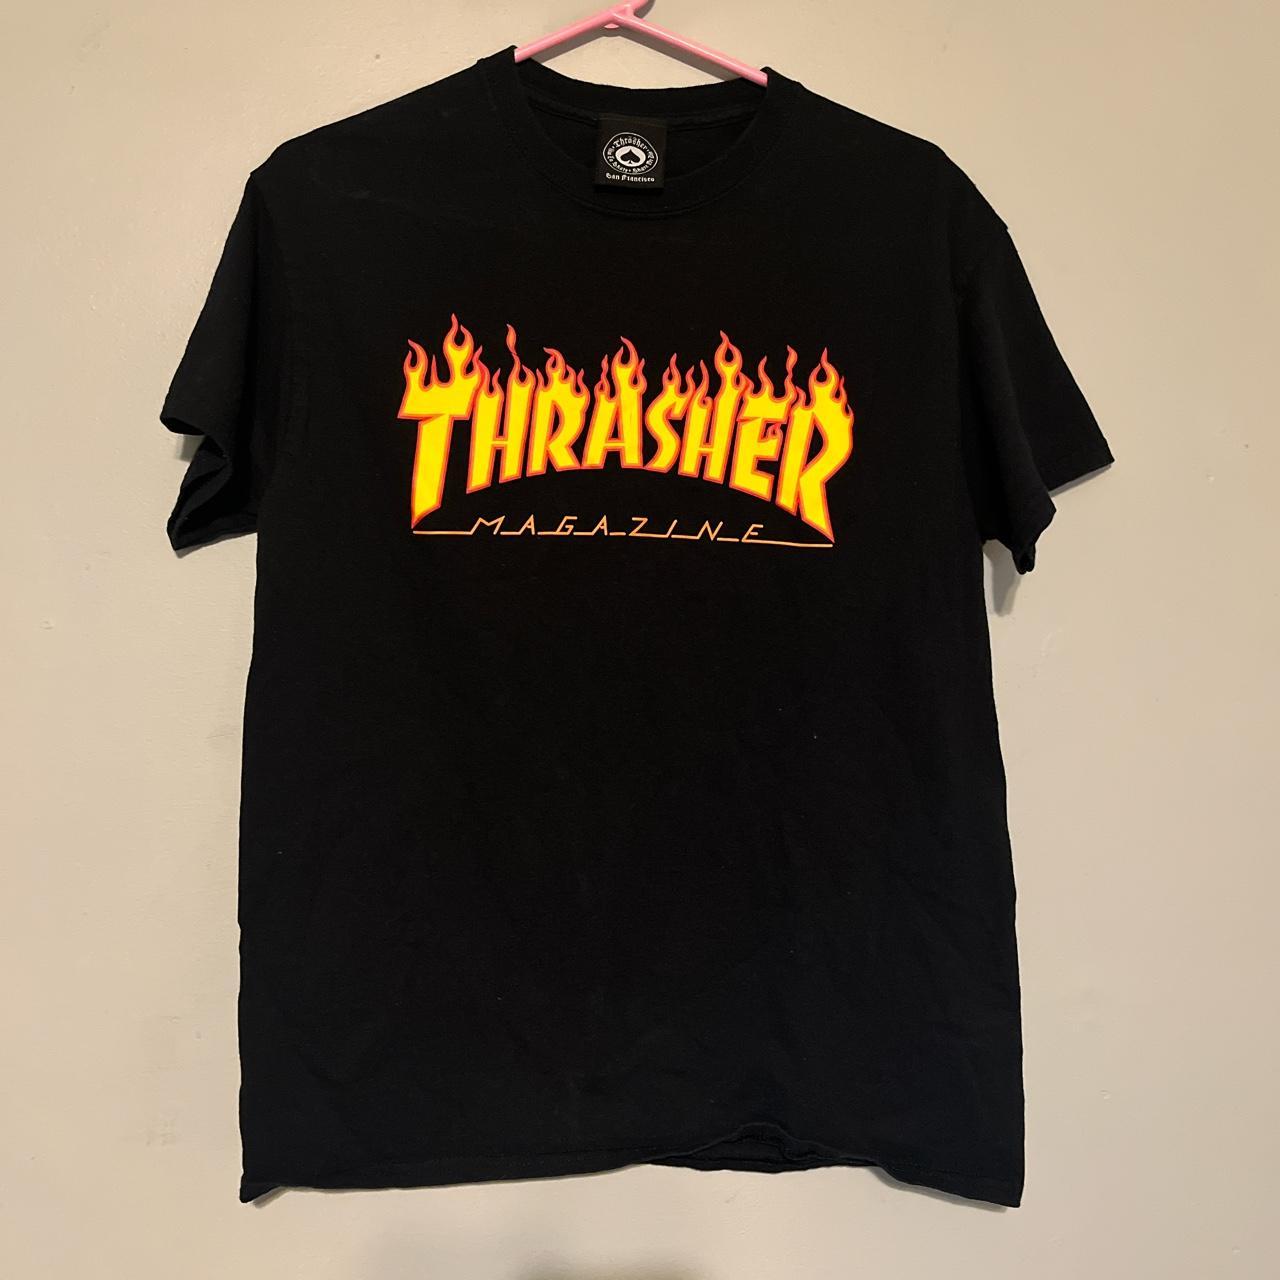 Thrasher Women's Black T-shirt